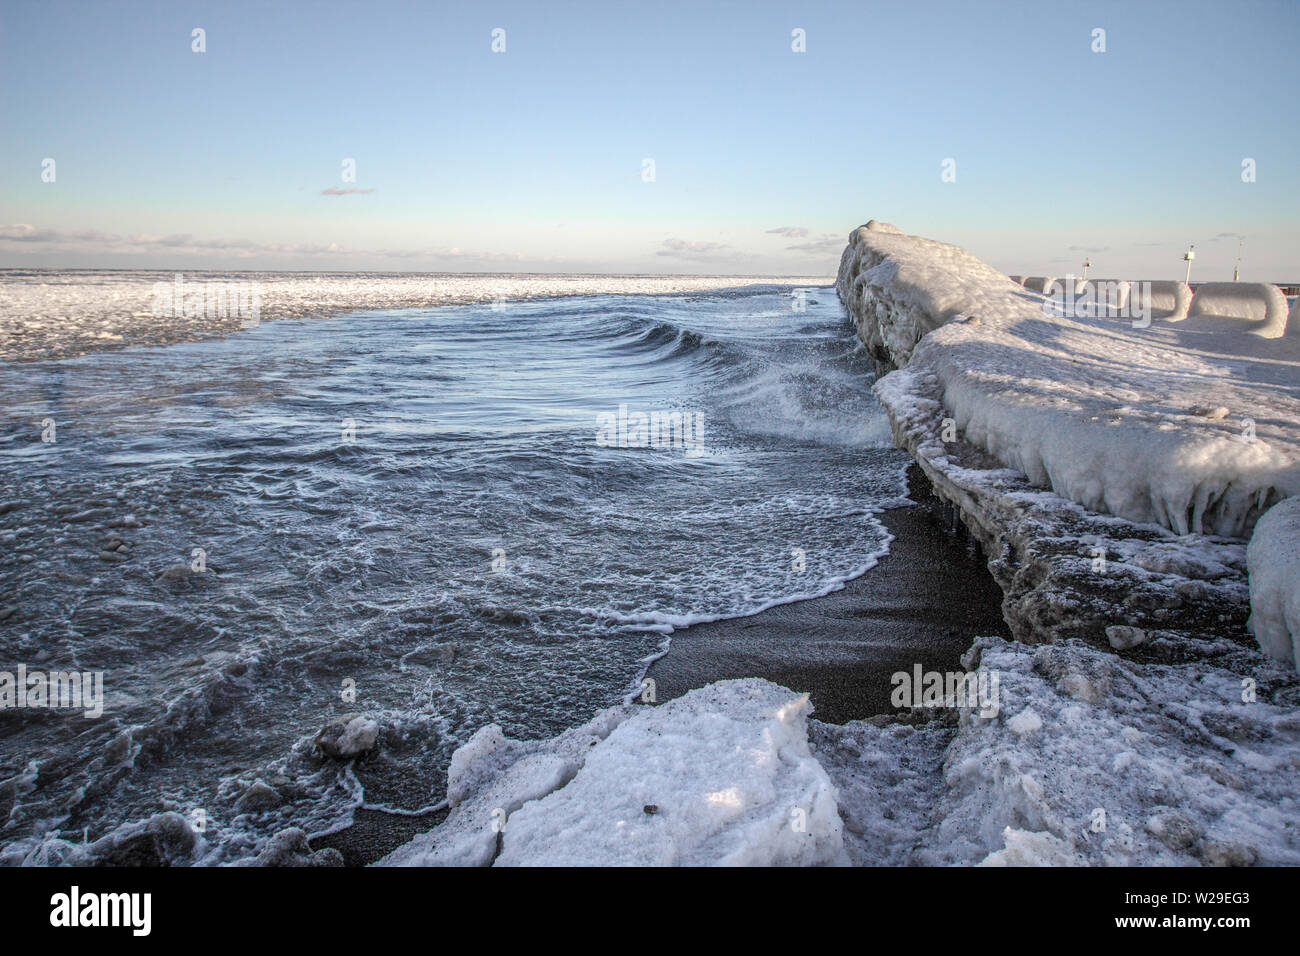 Hiver sur les Grands Lacs.Côte gelée, glace et vagues le long de la côte du lac Huron, près de Port Sanilac, Michigan. Banque D'Images